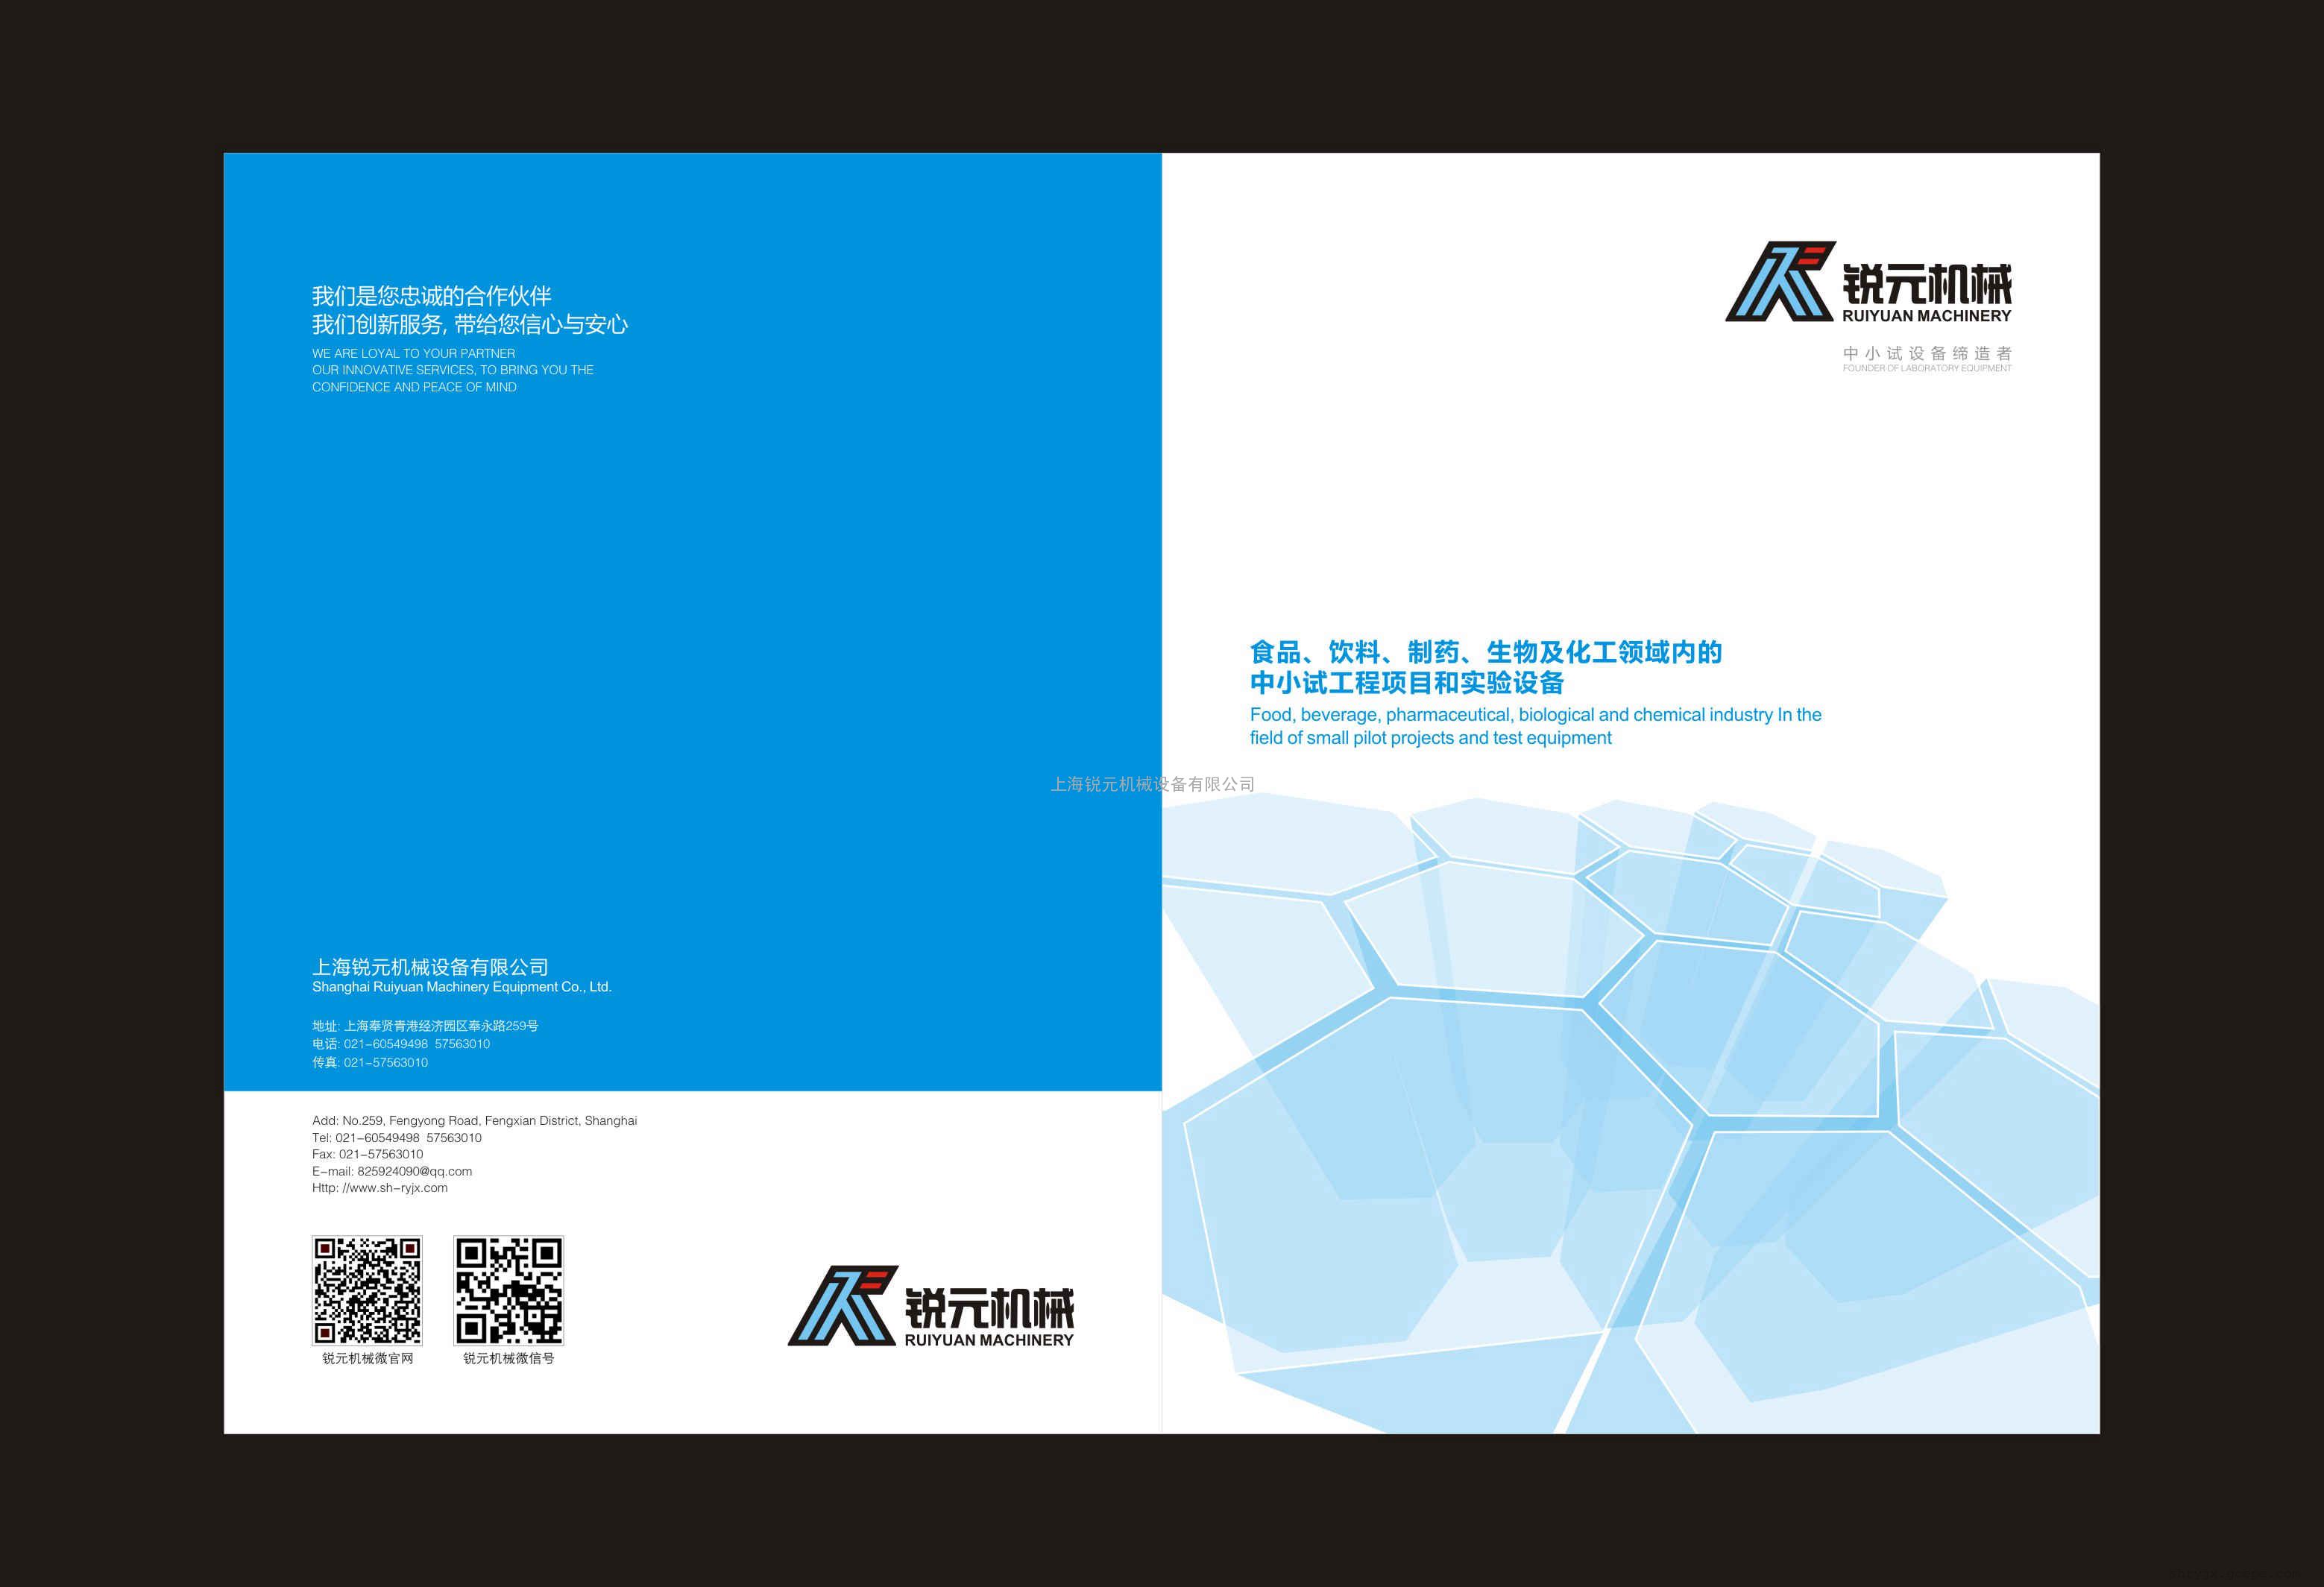 上海锐元机械有限公司最新样册发布